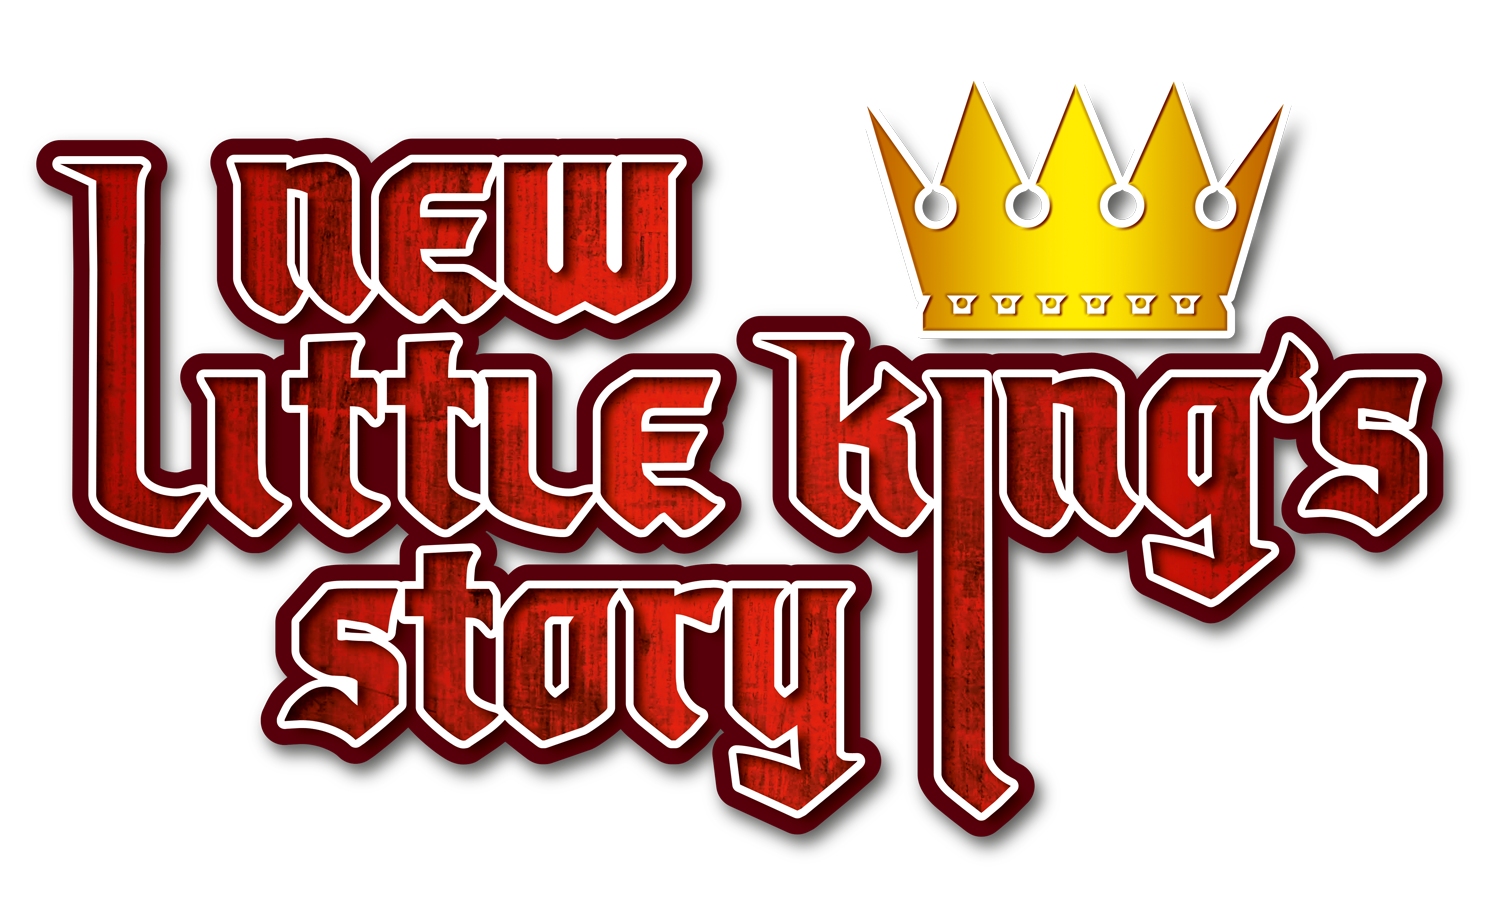 Little King лого. King story. New little King's story. Little Kings 2.